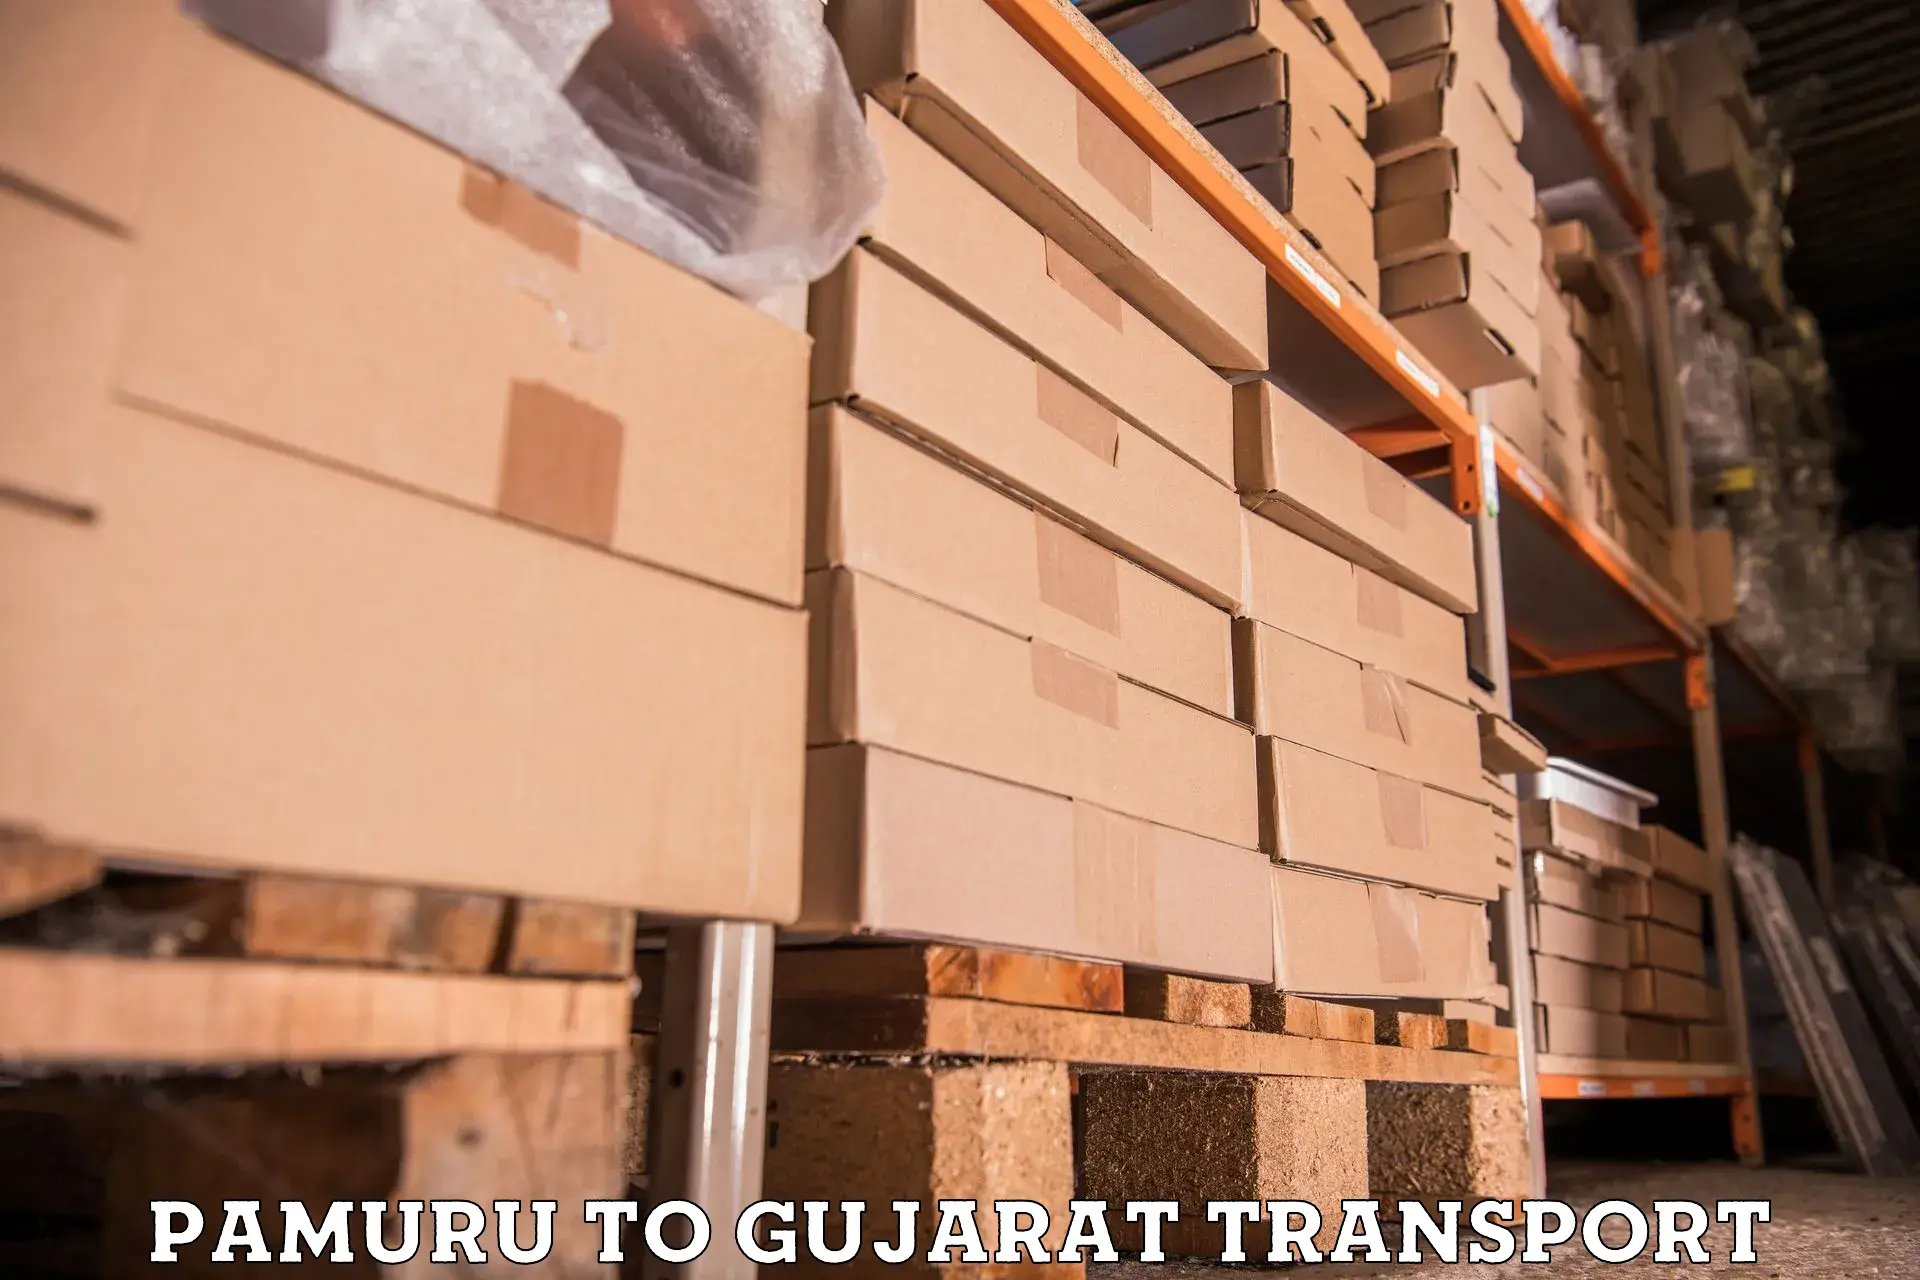 Interstate transport services Pamuru to Patan Gujarat